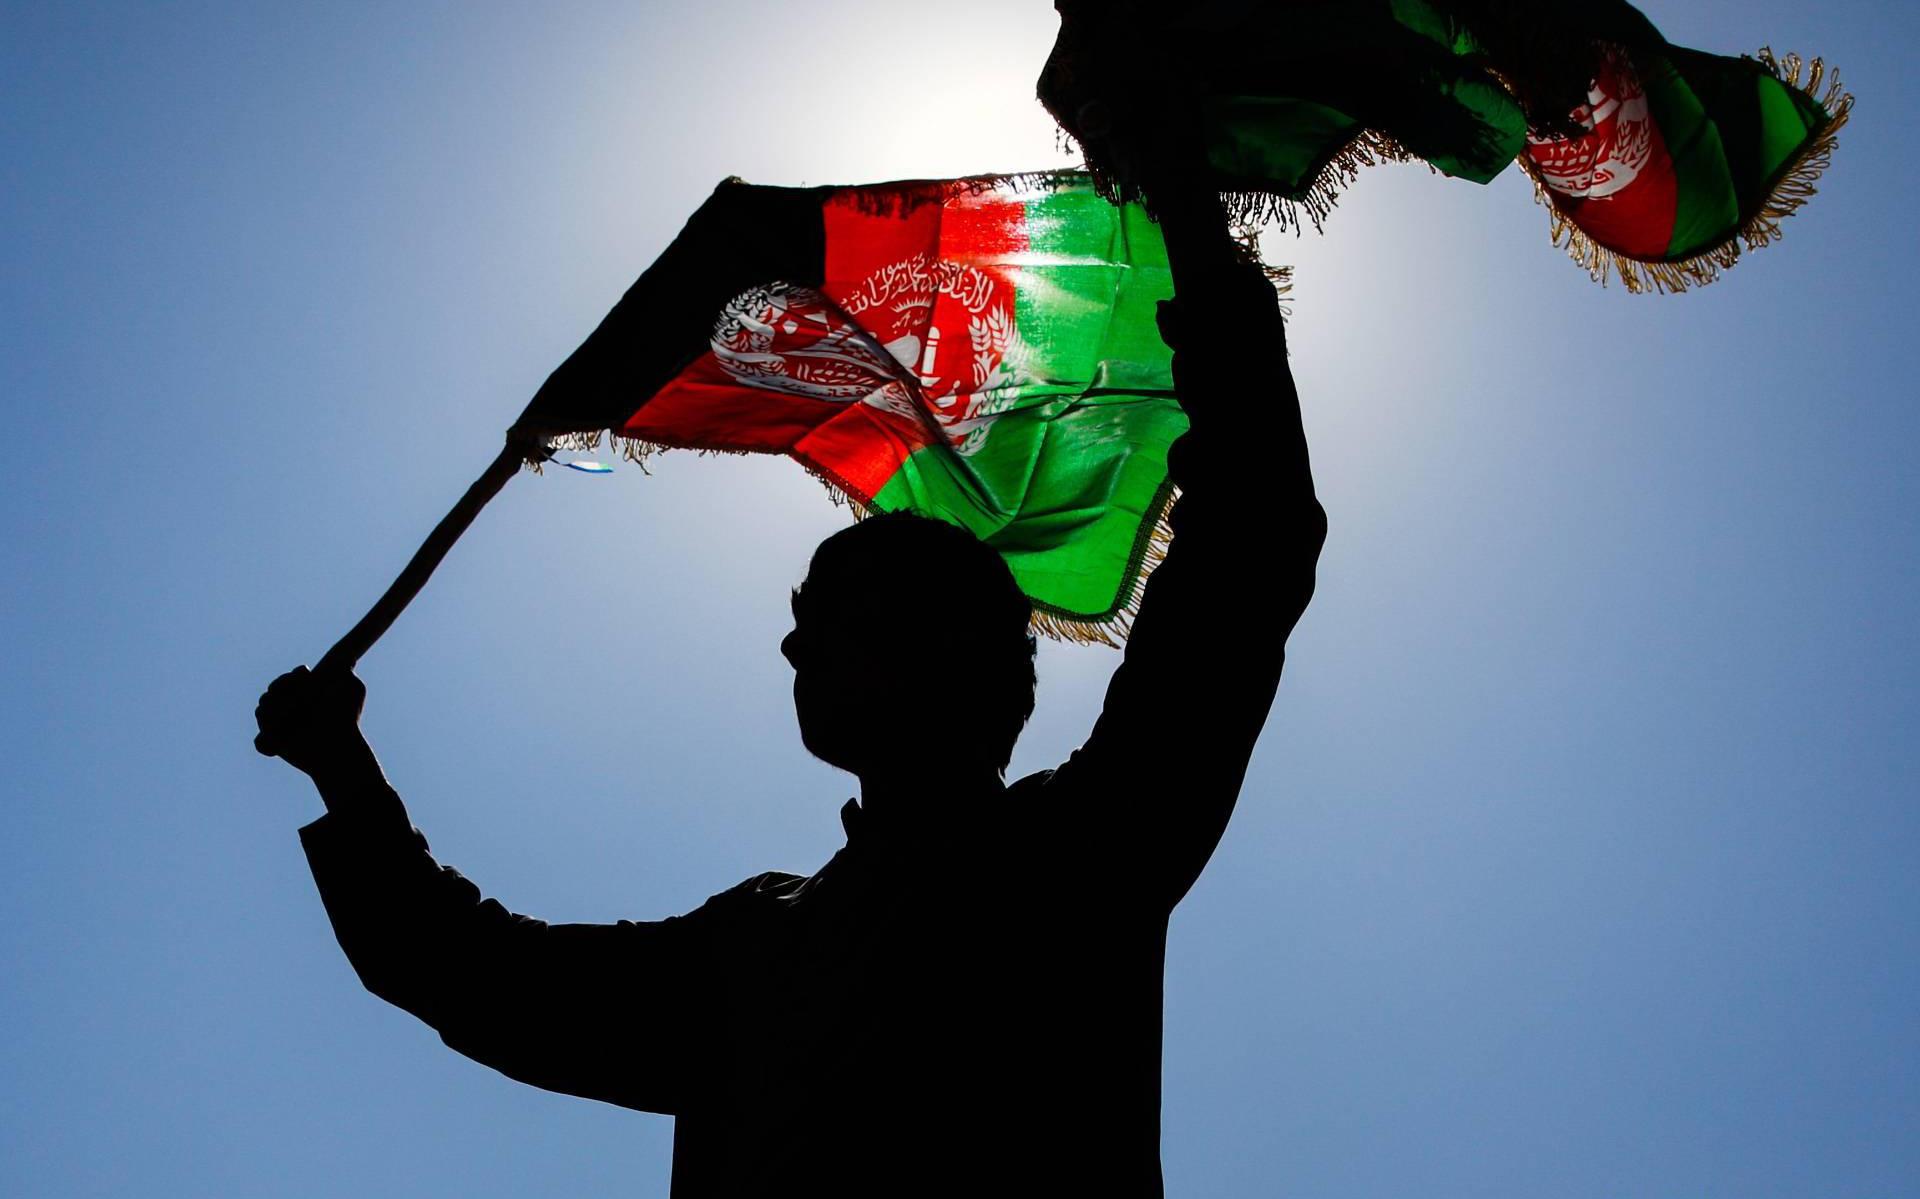 Regering Afghanistan maakt weg vrij naar vredesoverleg